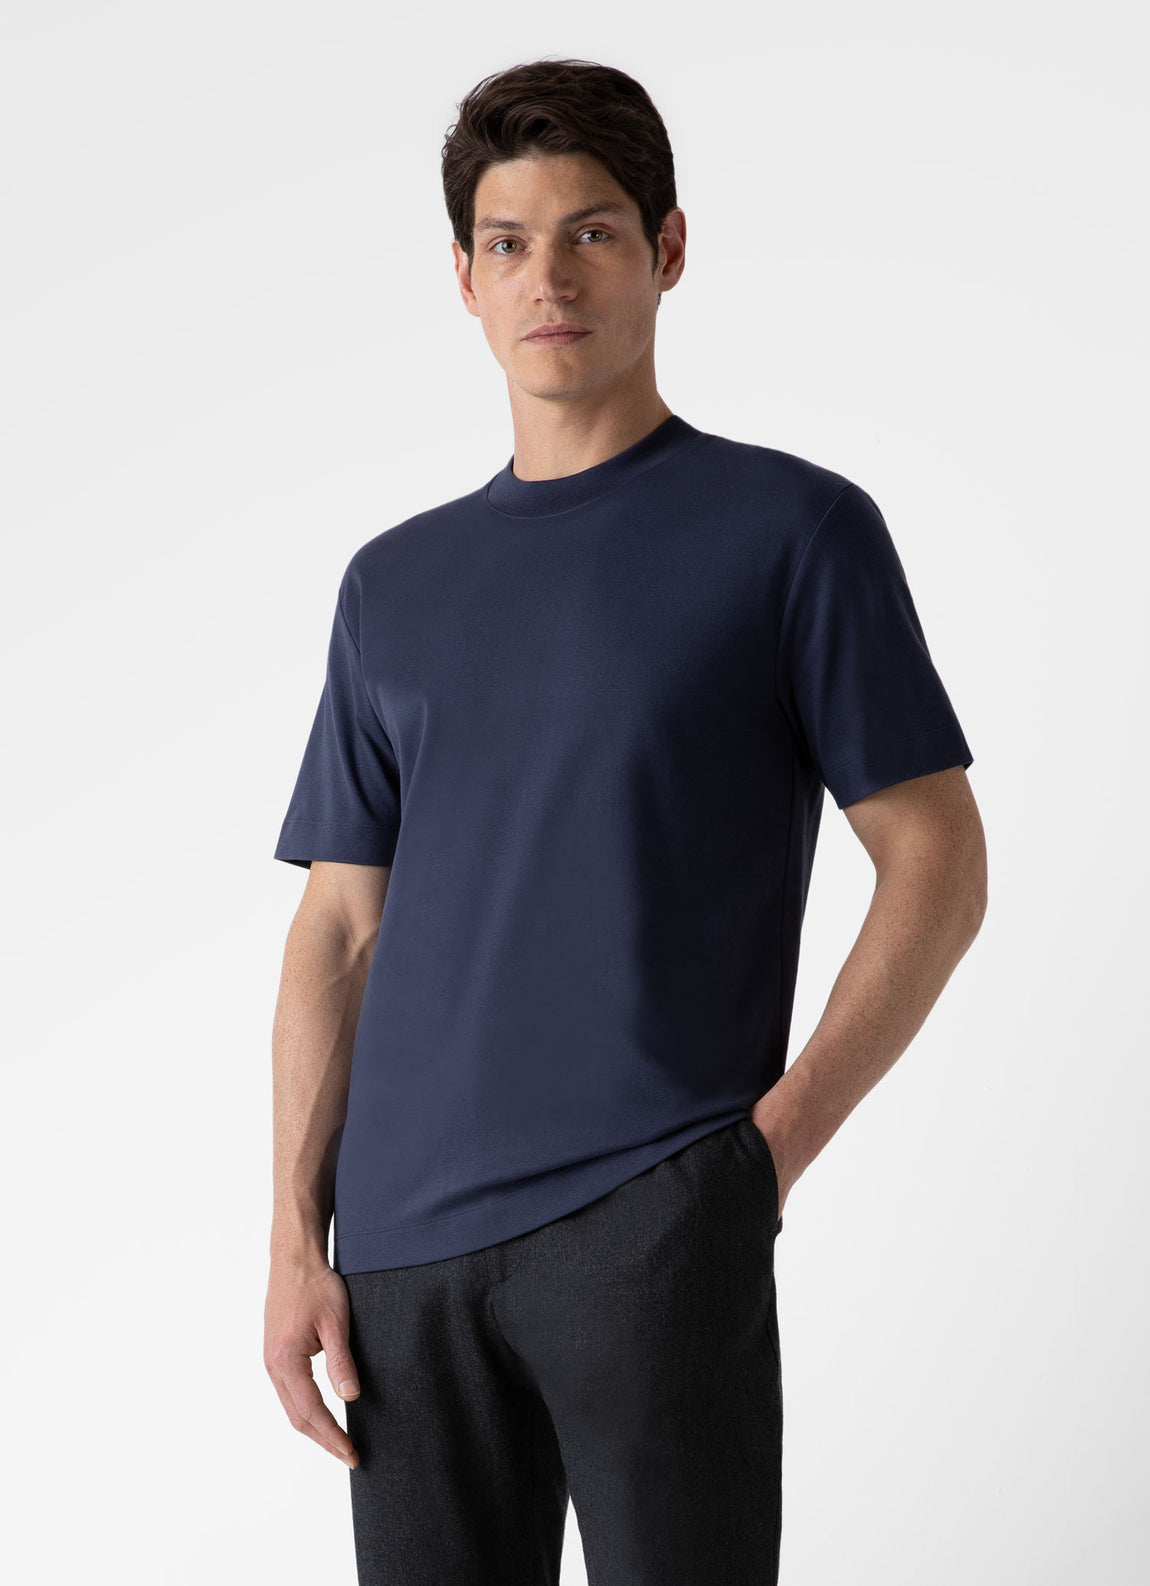 Men's Relaxed Fit Heavyweight T-shirt in Navy | Sunspel